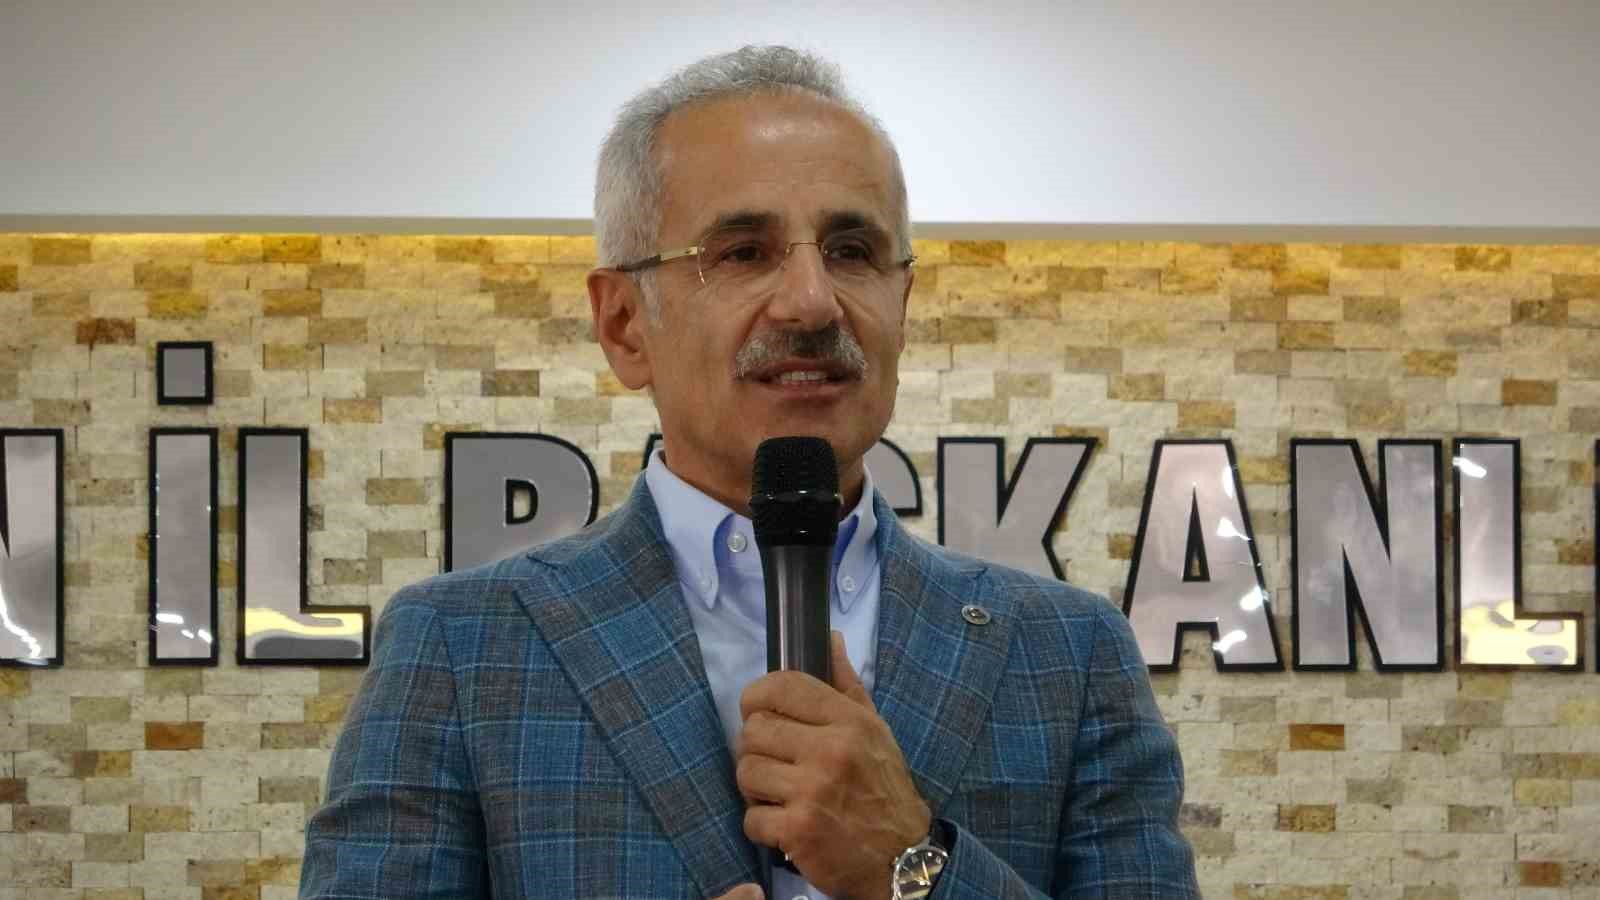 Bakanı Uraloğlu: “Yerel seçimlerde Van’ın haritadaki rengini turuncu yapacağız”